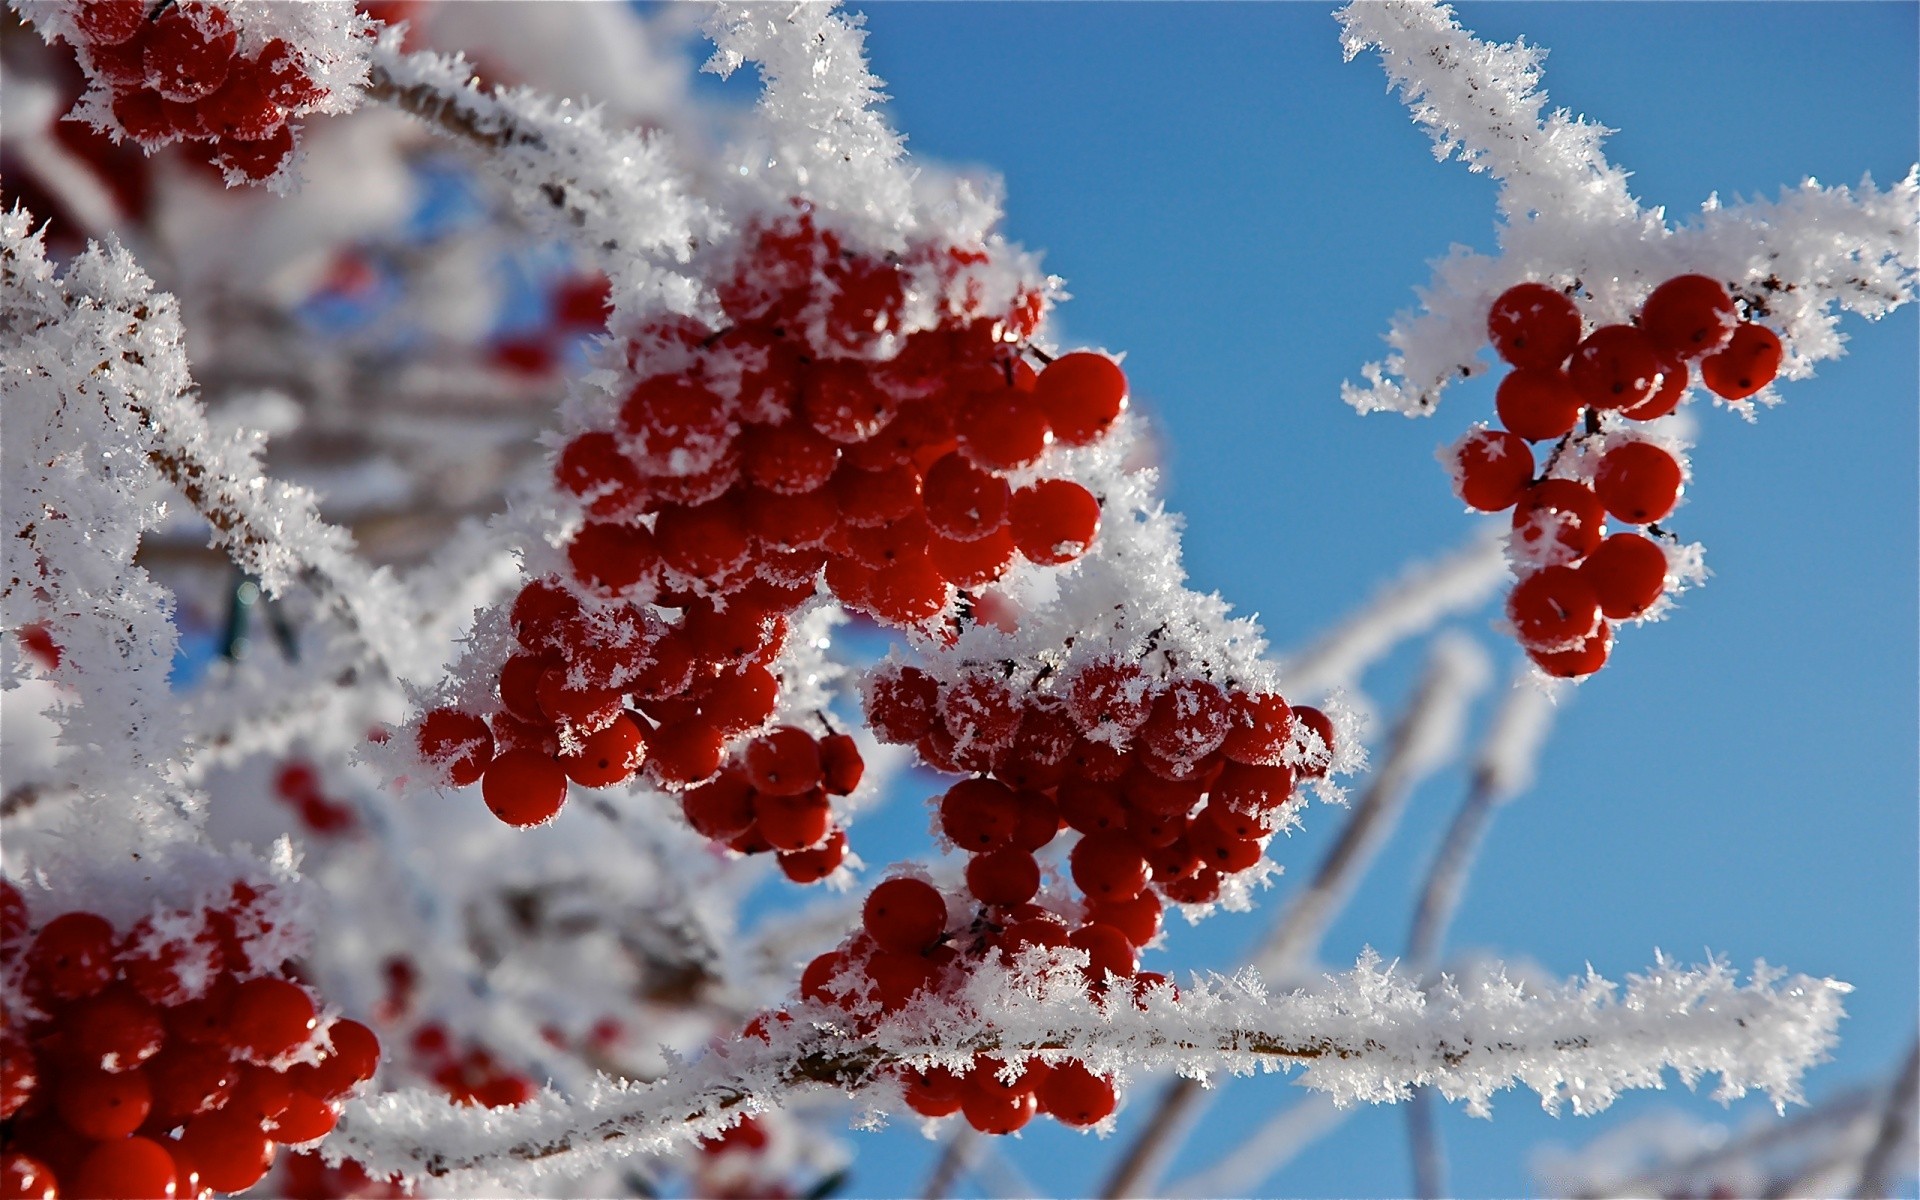 зима мороз снег природа филиал сезон яркий дерево ягодка лед на открытом воздухе рождество рябина лист замороженные рябина светит холодная цвет